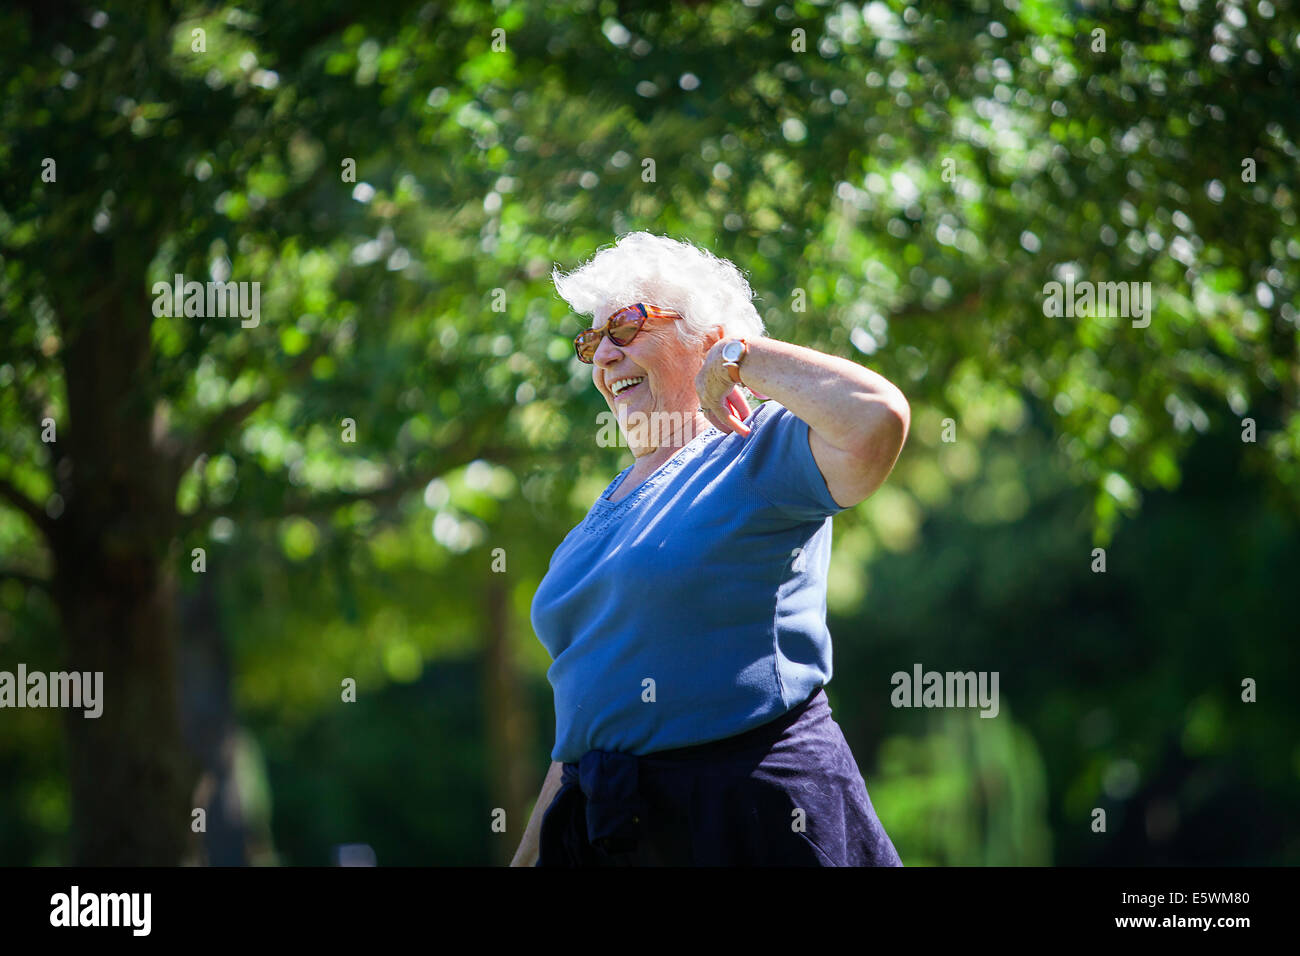 Persona anciana practicando un deporte Foto de stock